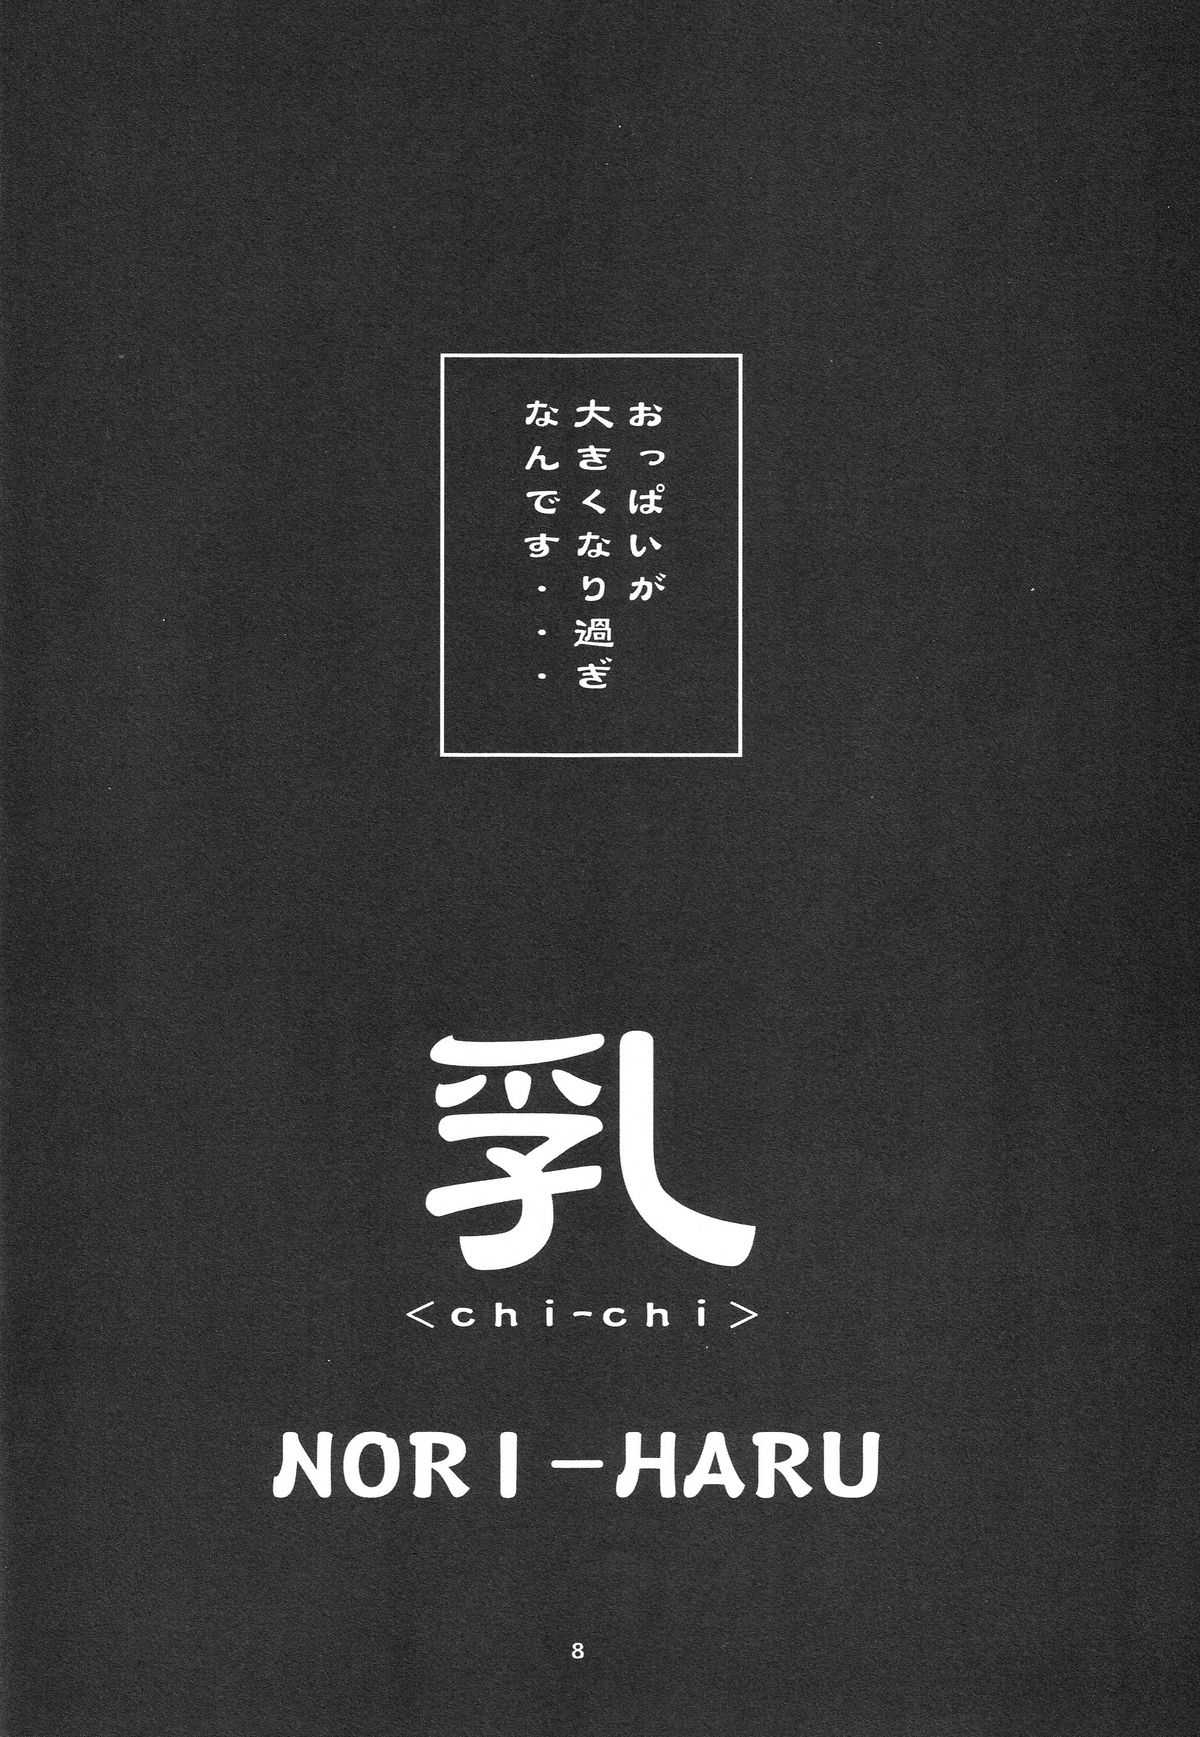 [P-Collection (Hori-Haru)] Shiranui (KOF) 